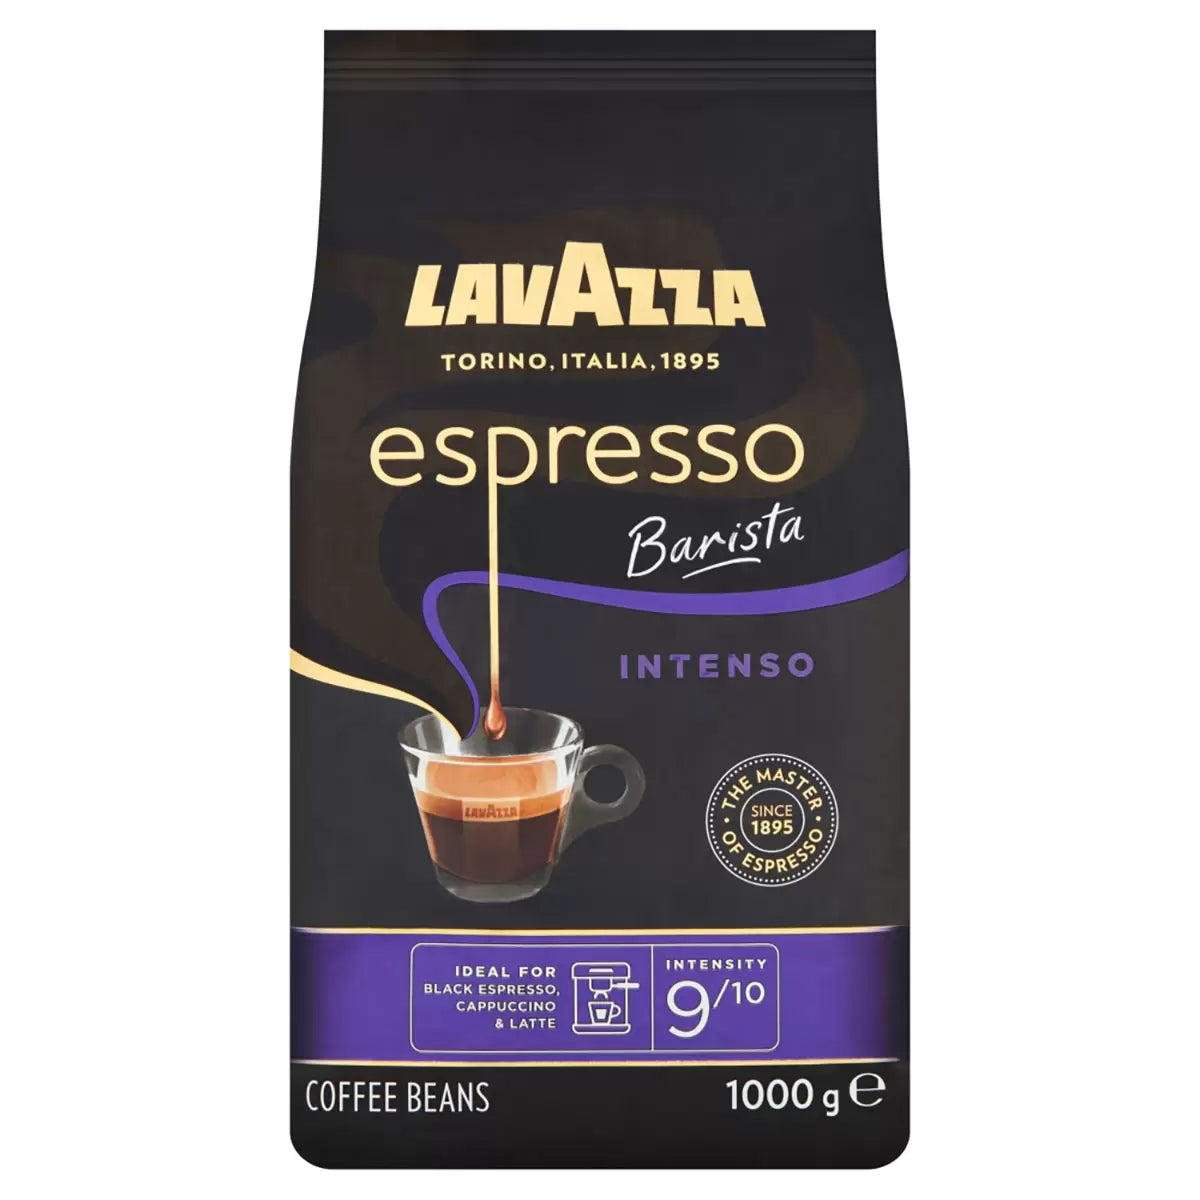 Lavazza Espresso Barista Intenso Coffee Beans - 1kg